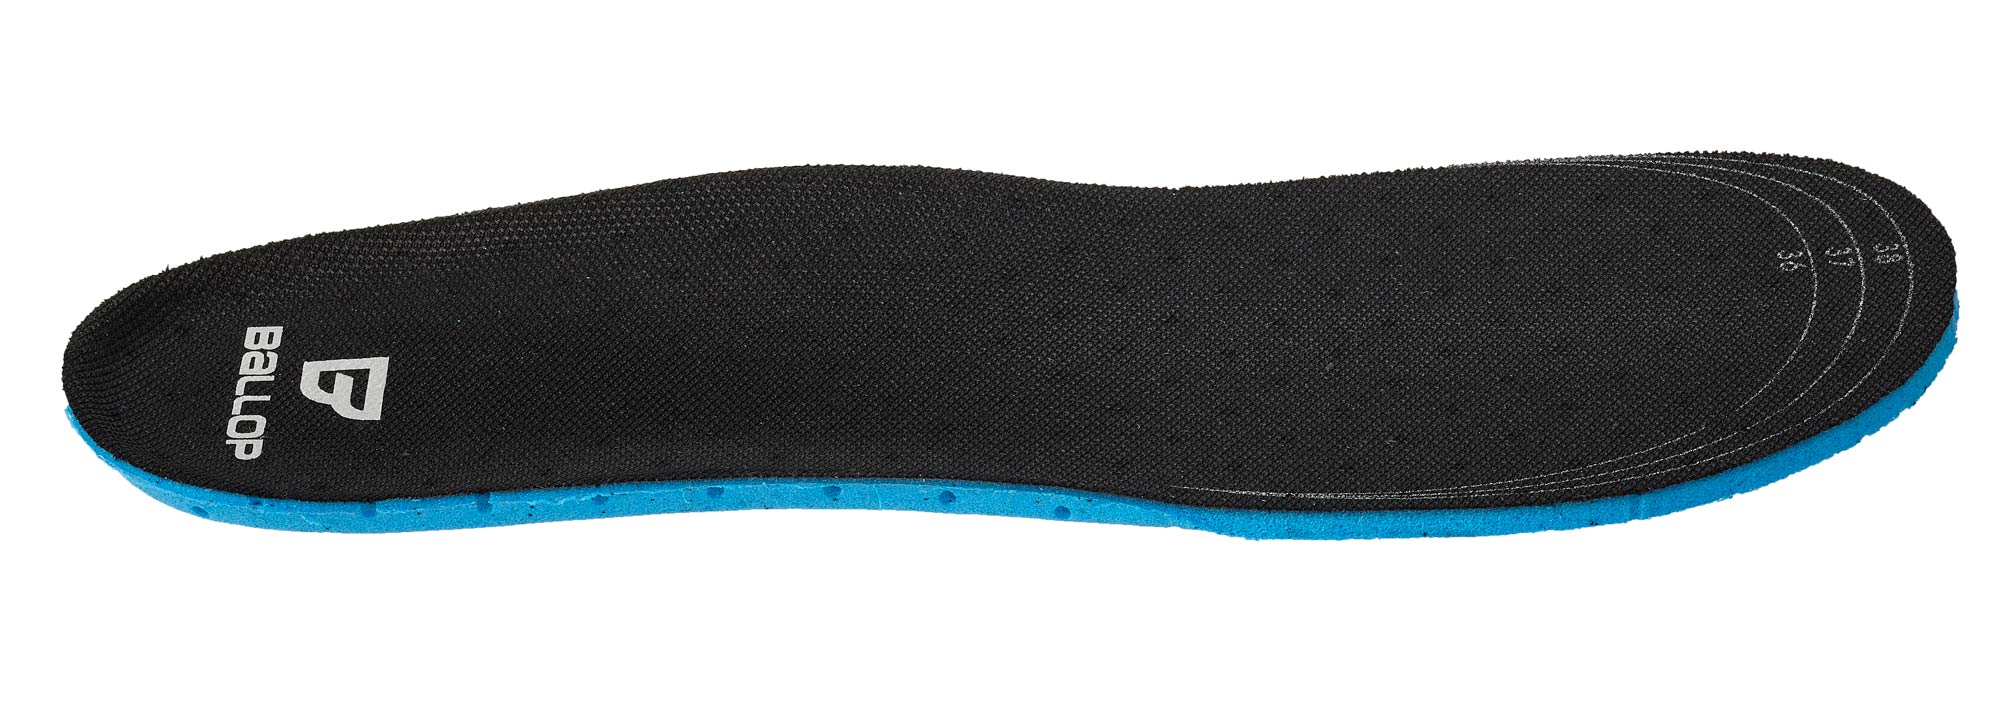 BALLOP Ersatz-Innensohle Comfort für Barefoot